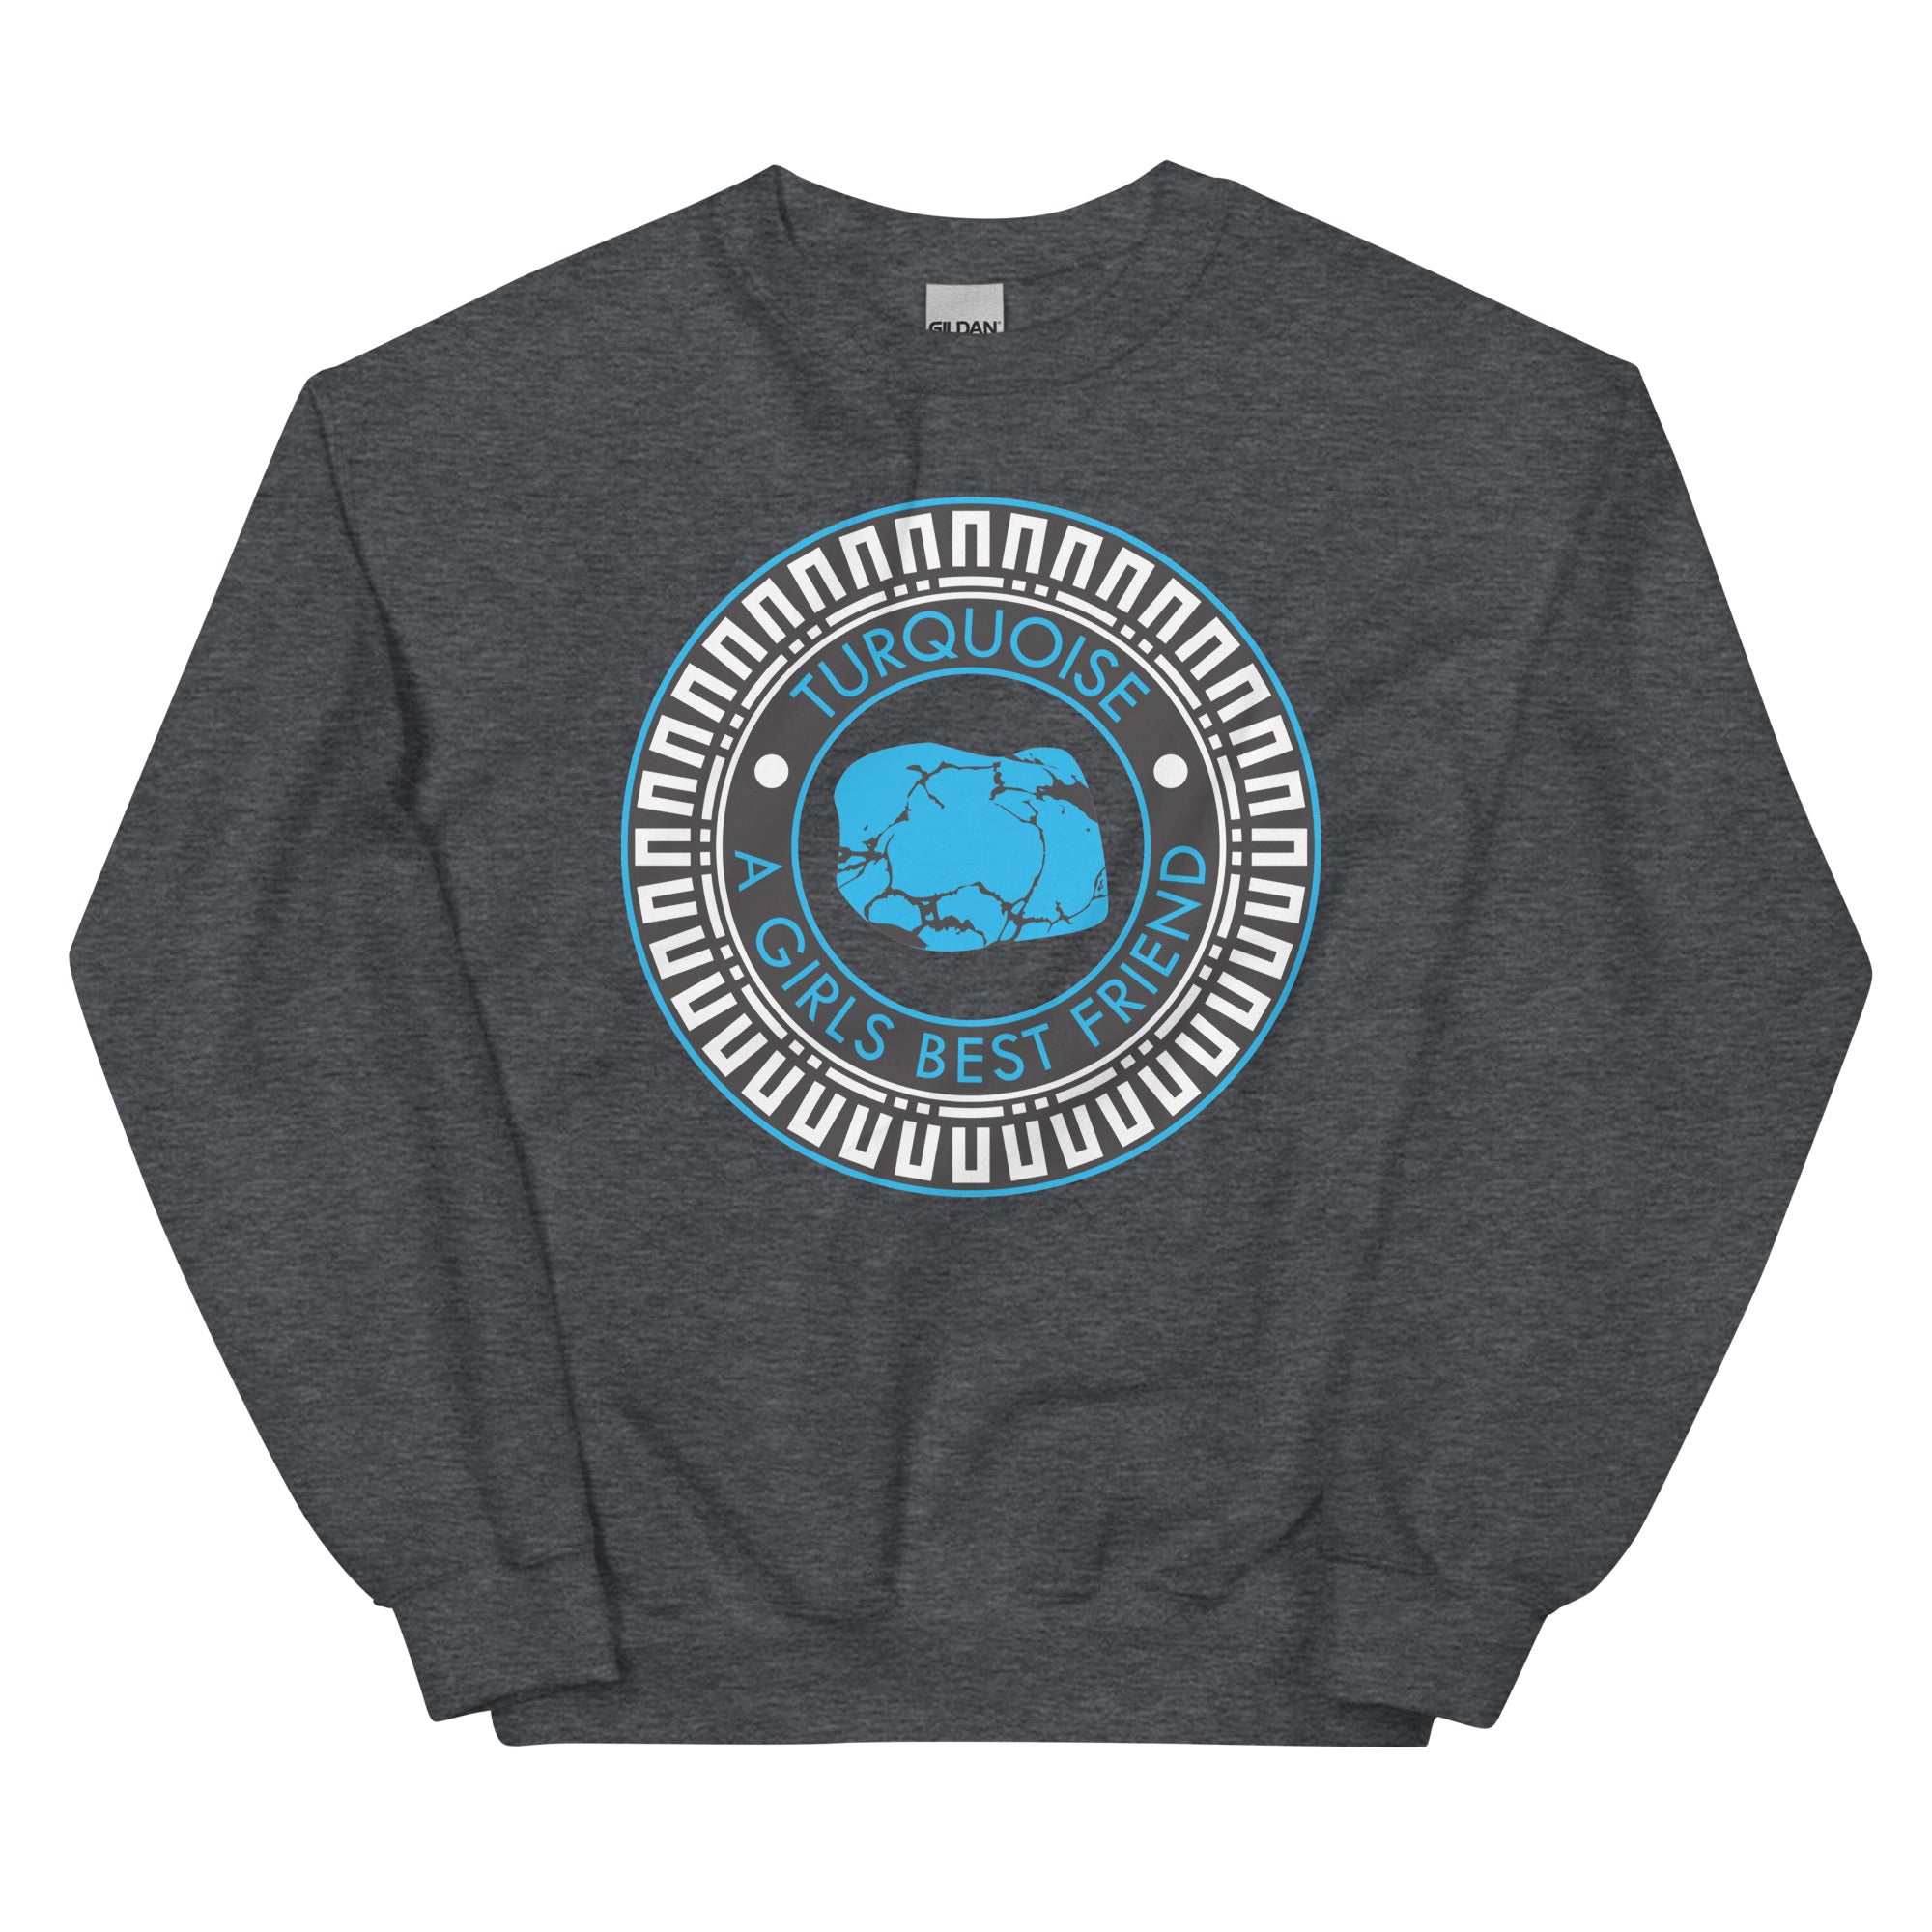 Turquoise is a Girl's Best Friend Sweatshirt